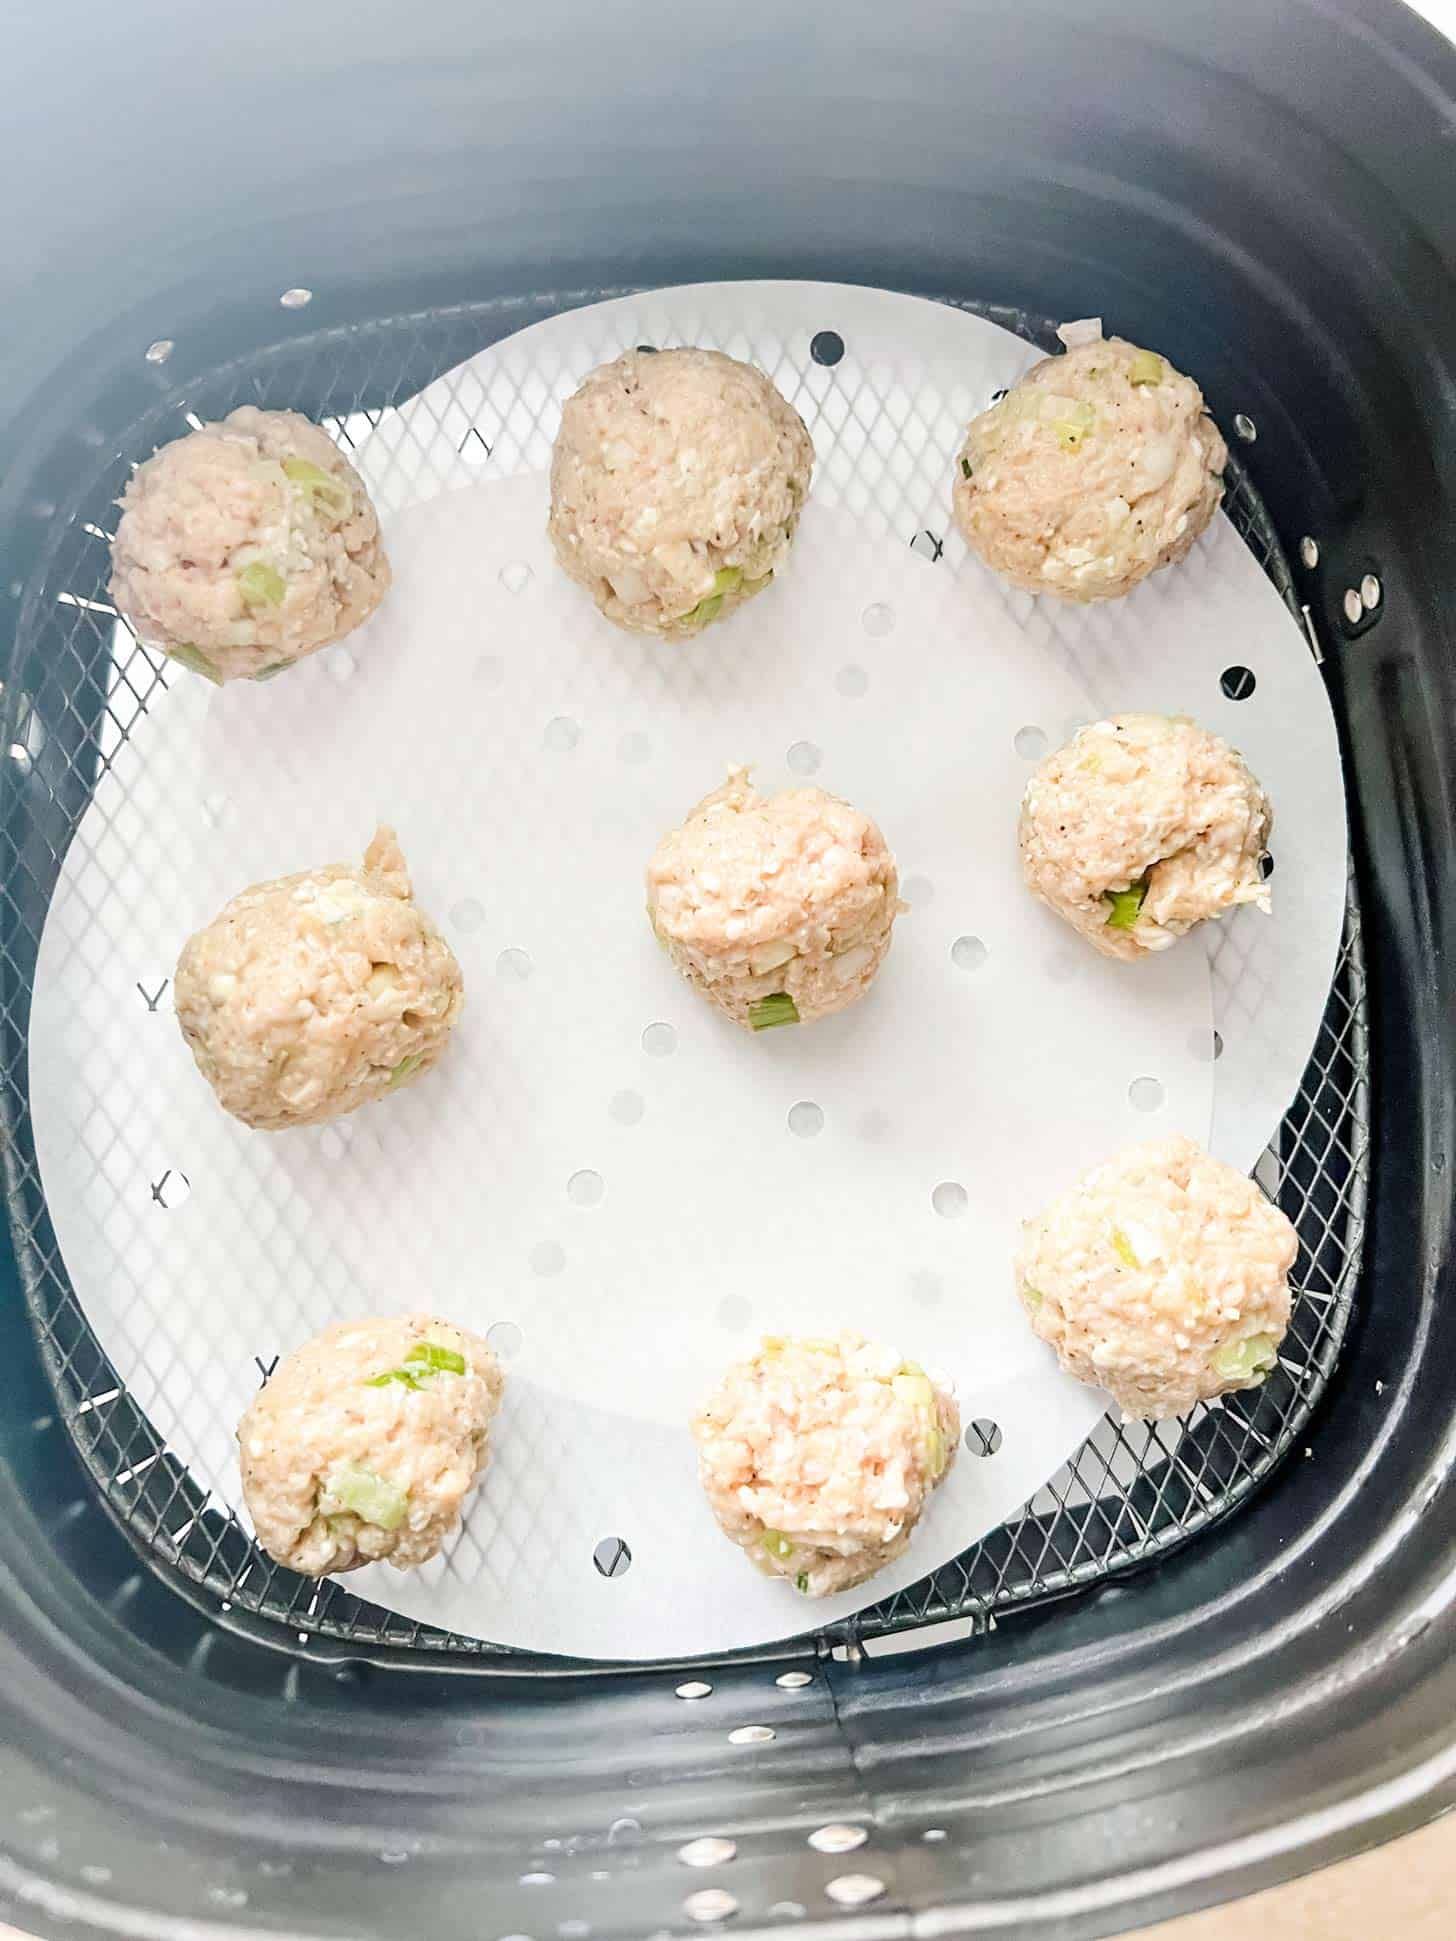 Chicken meatballs in an air fryer.